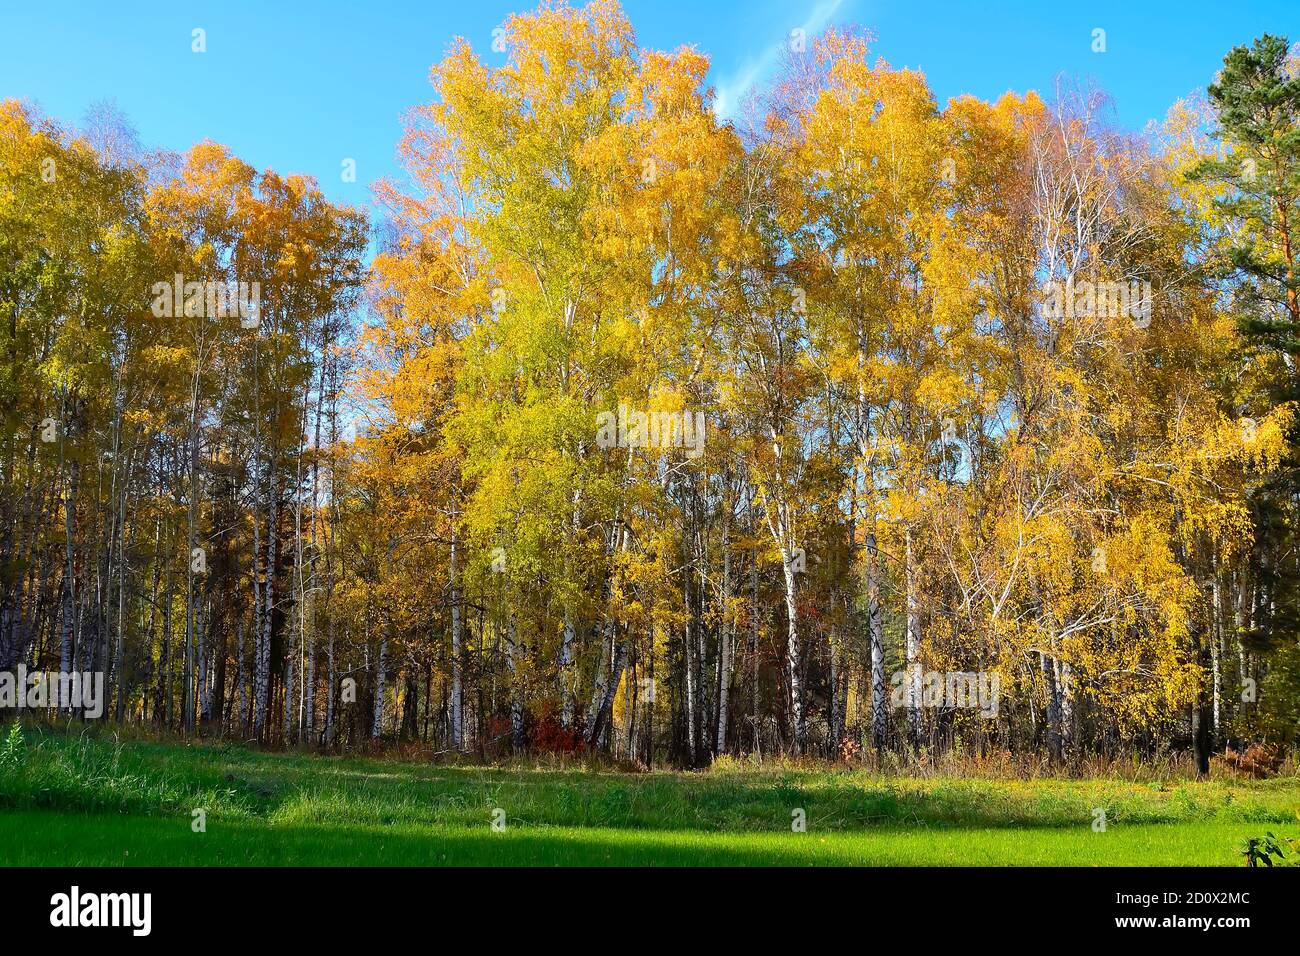 Gemäht Wiese mit grünem Gras in der Nähe Herbst Birkenwald mit bunten hellen Laub. Malerische Herbstlandschaft im goldenen Birkenhain an warmen sonnigen Tagen Stockfoto